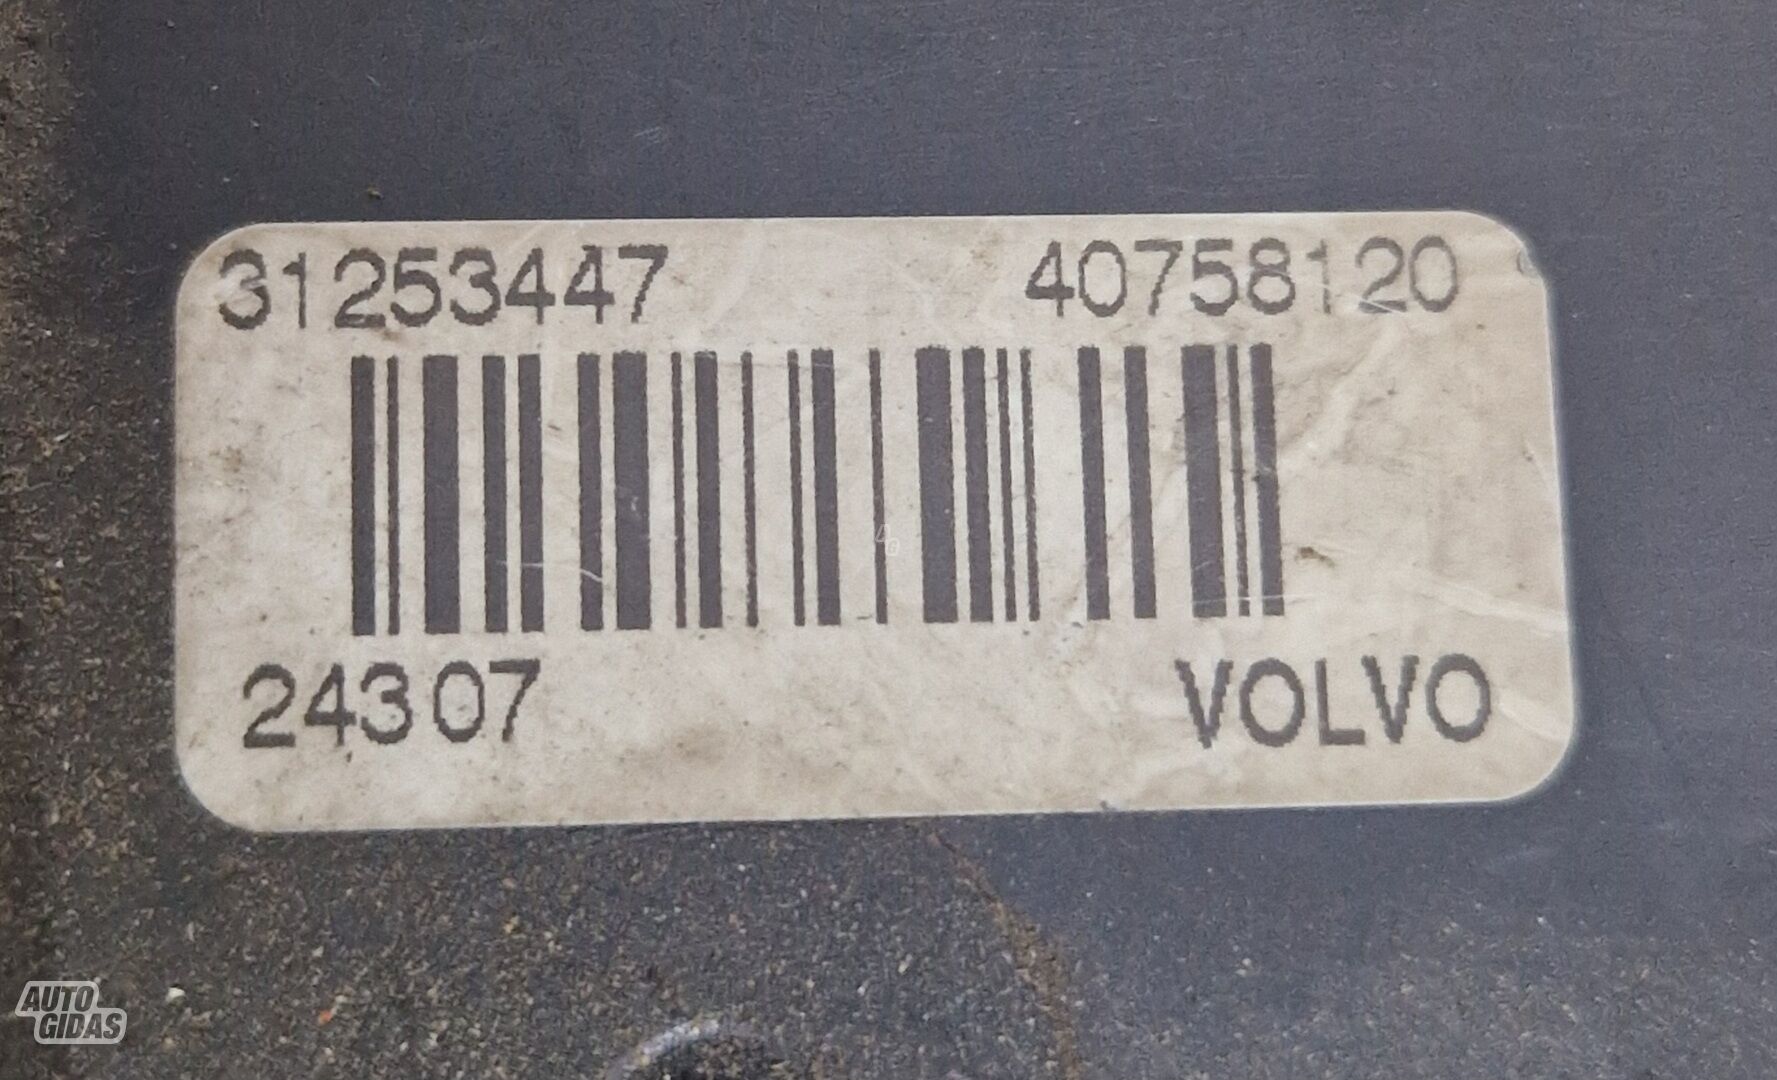 Bagažinės spyna, 31253447, Volvo Xc90 2008 m